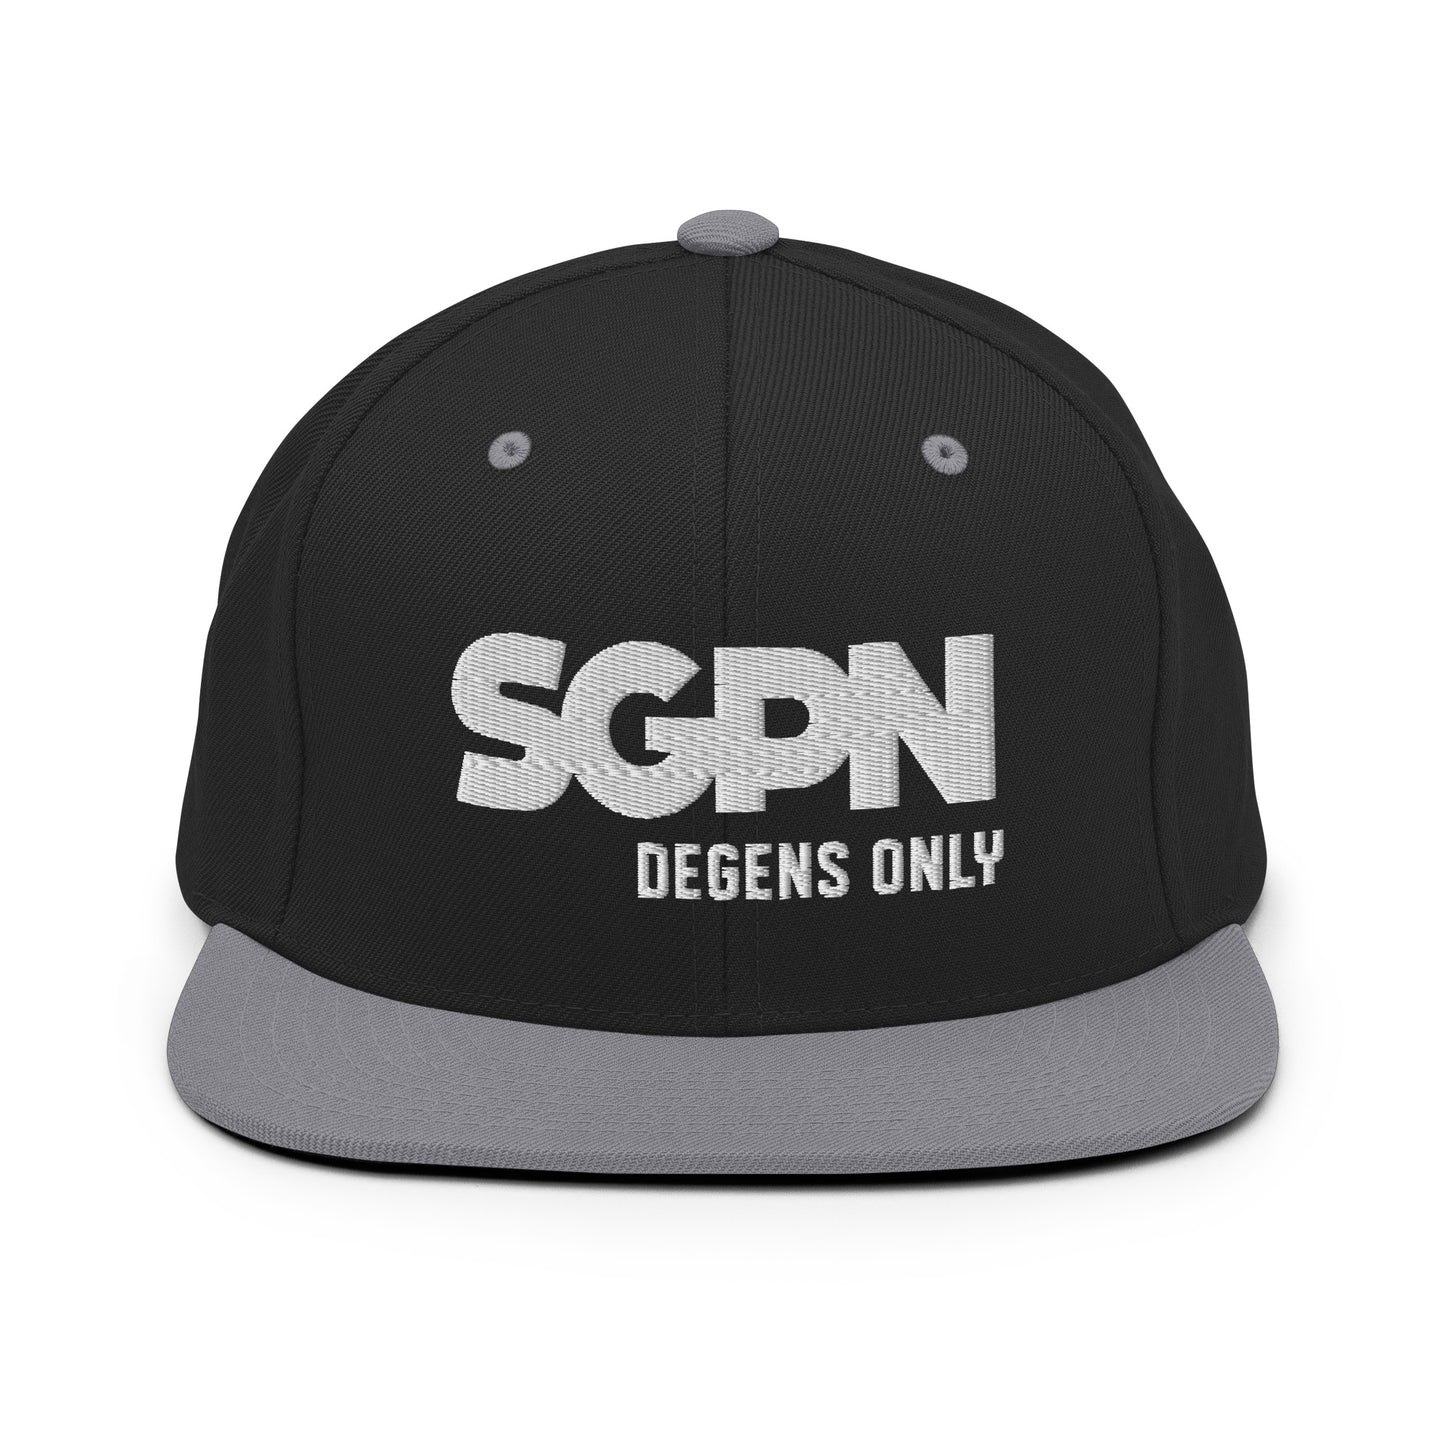 SGPN - Degens Only edition - Snapback Hat (White Logo)